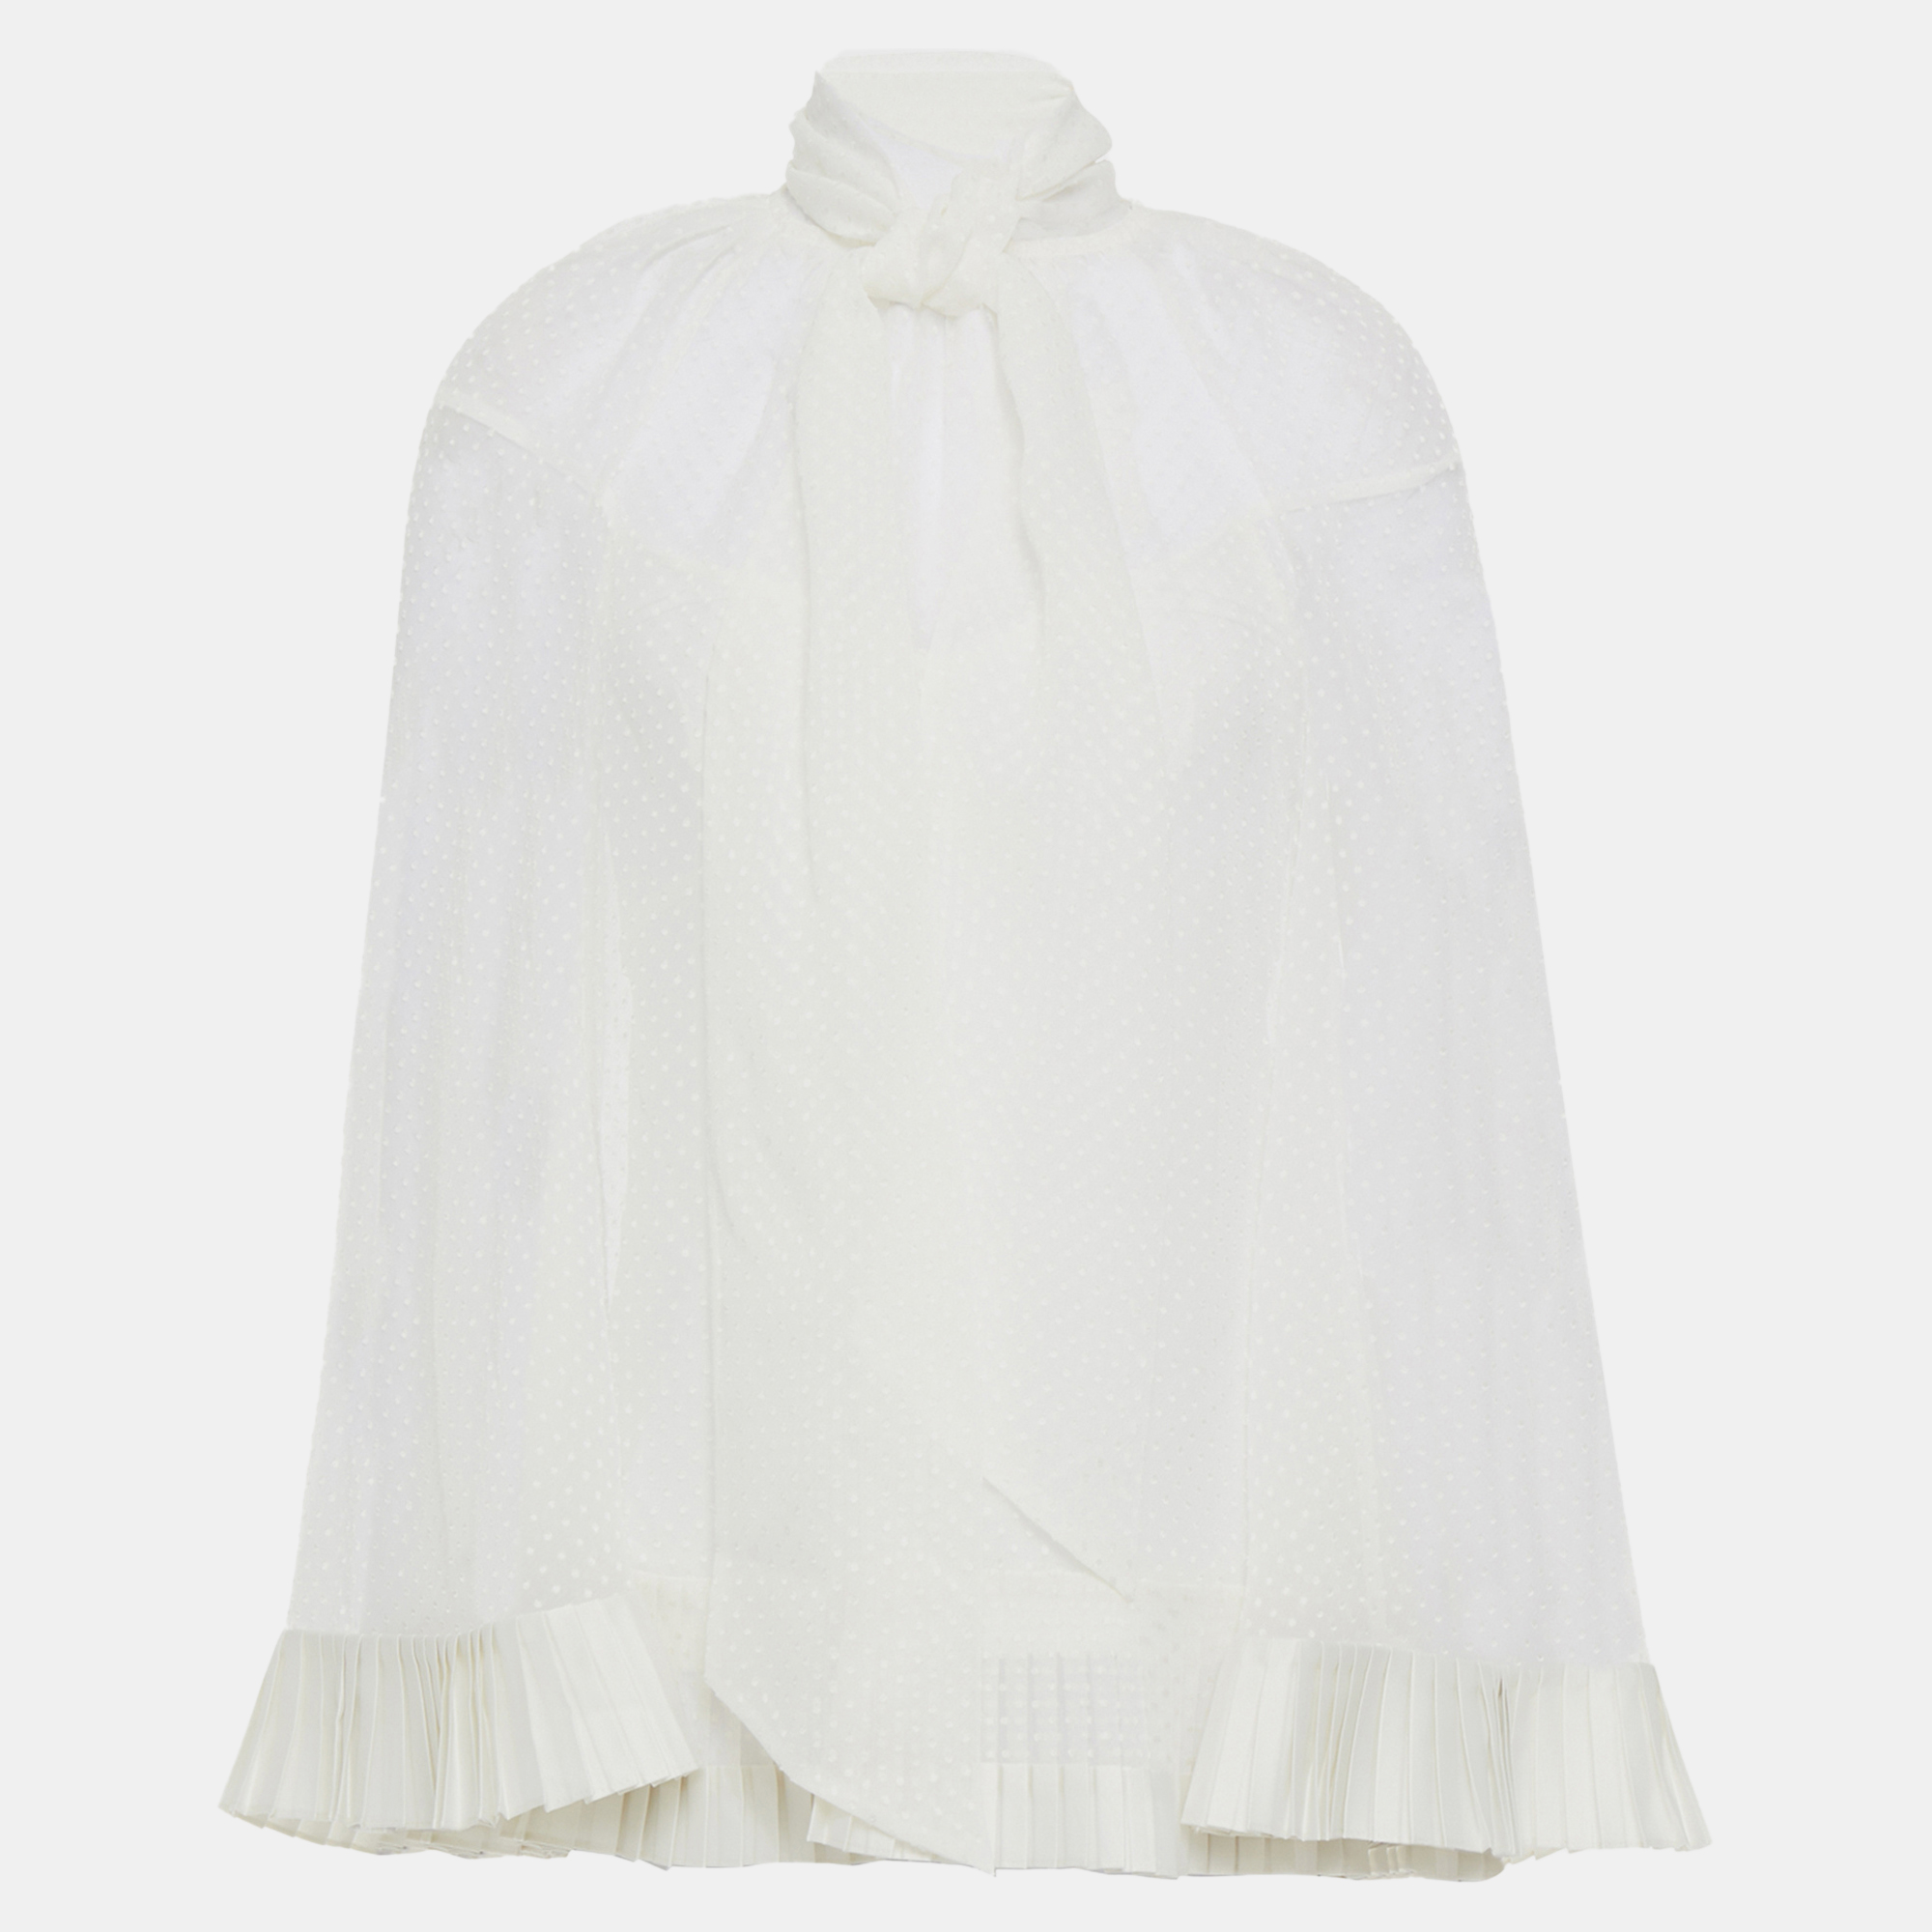 Zimmermann white dotted chiffon blouse l